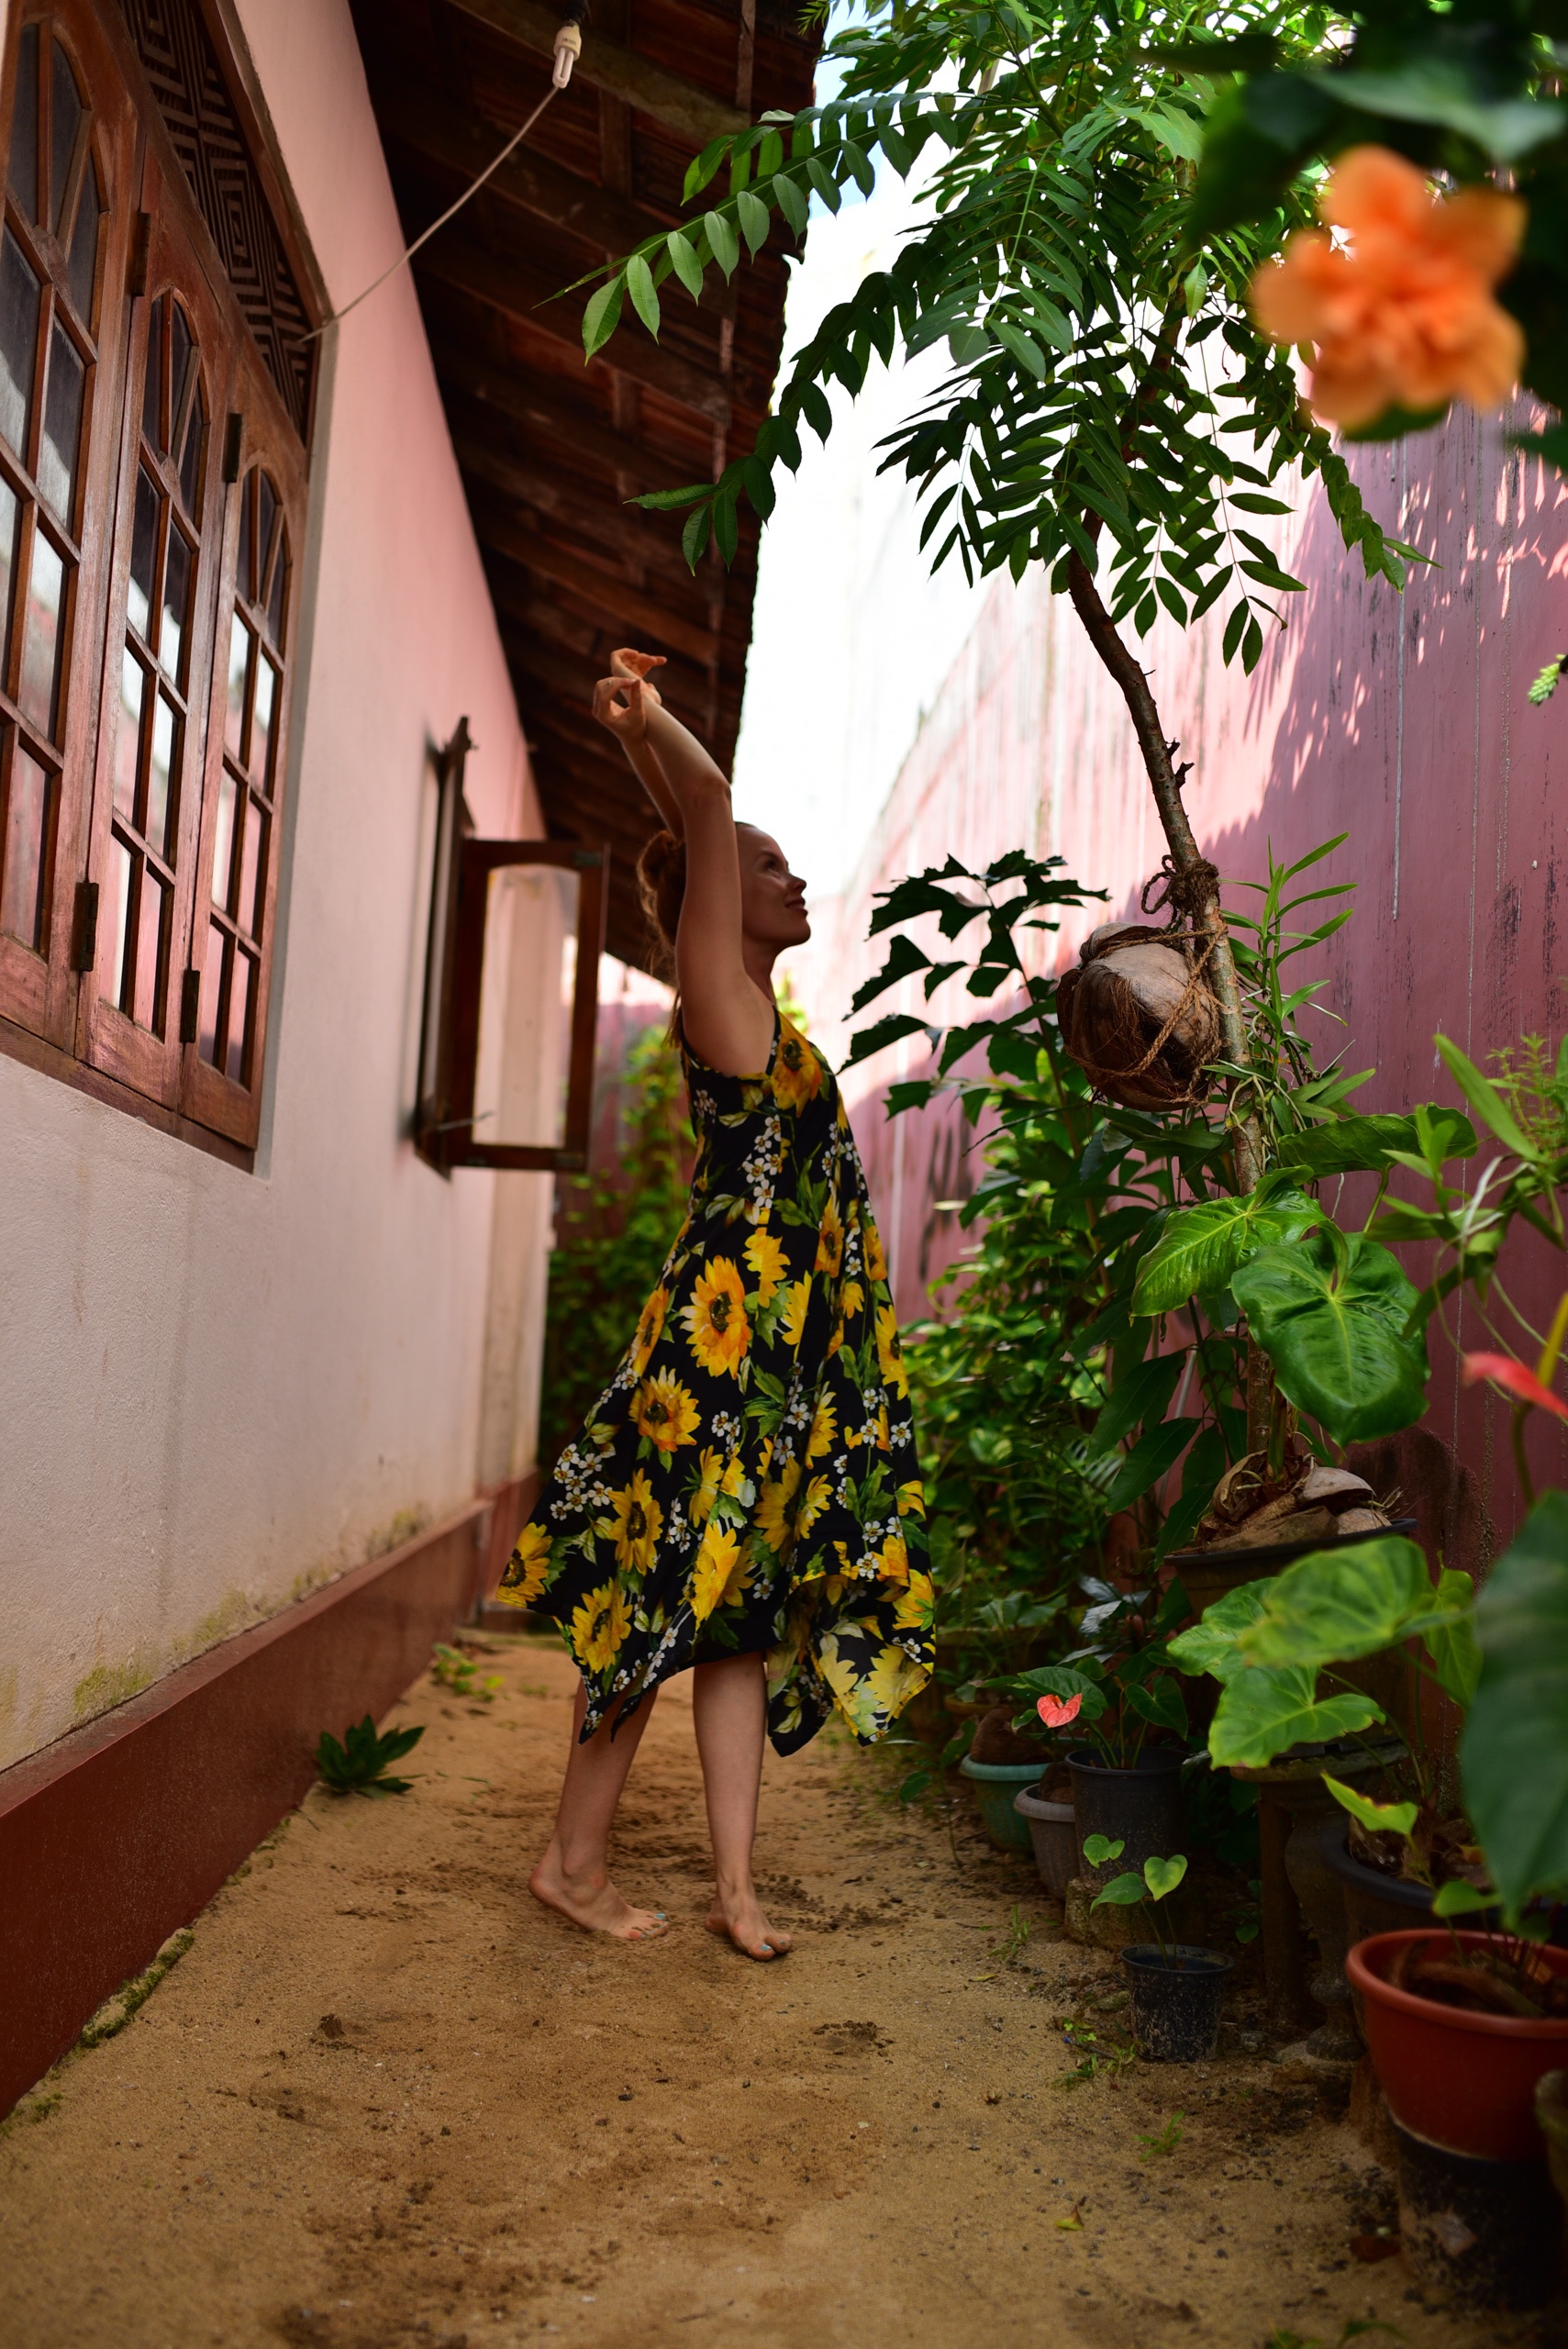 Väriterapiaa kaamokseen – Sri Lankan taikasaari